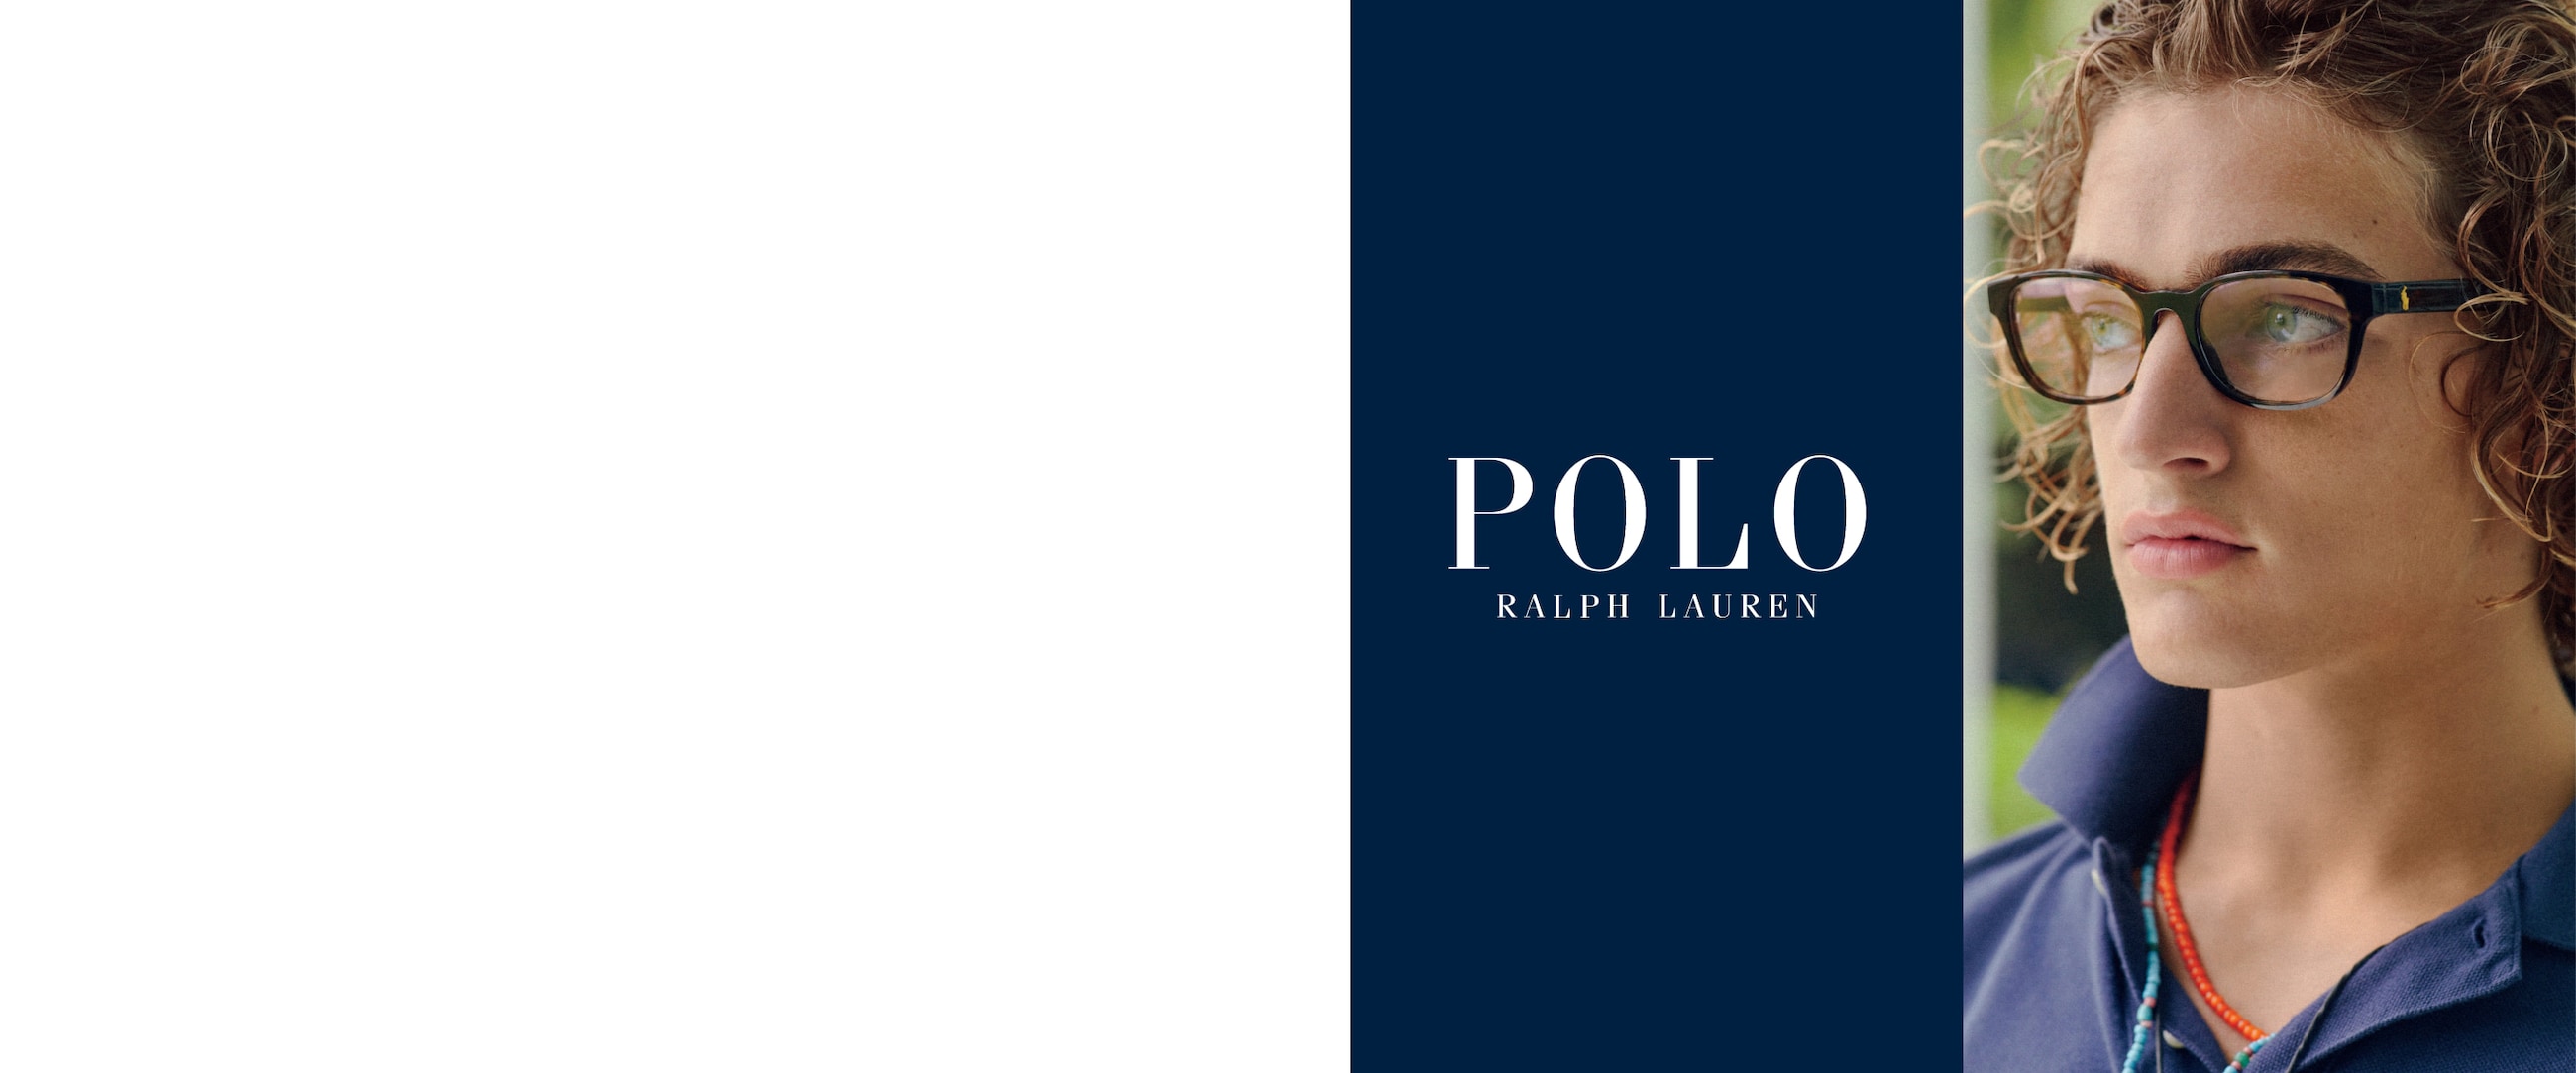 Polo Campaign